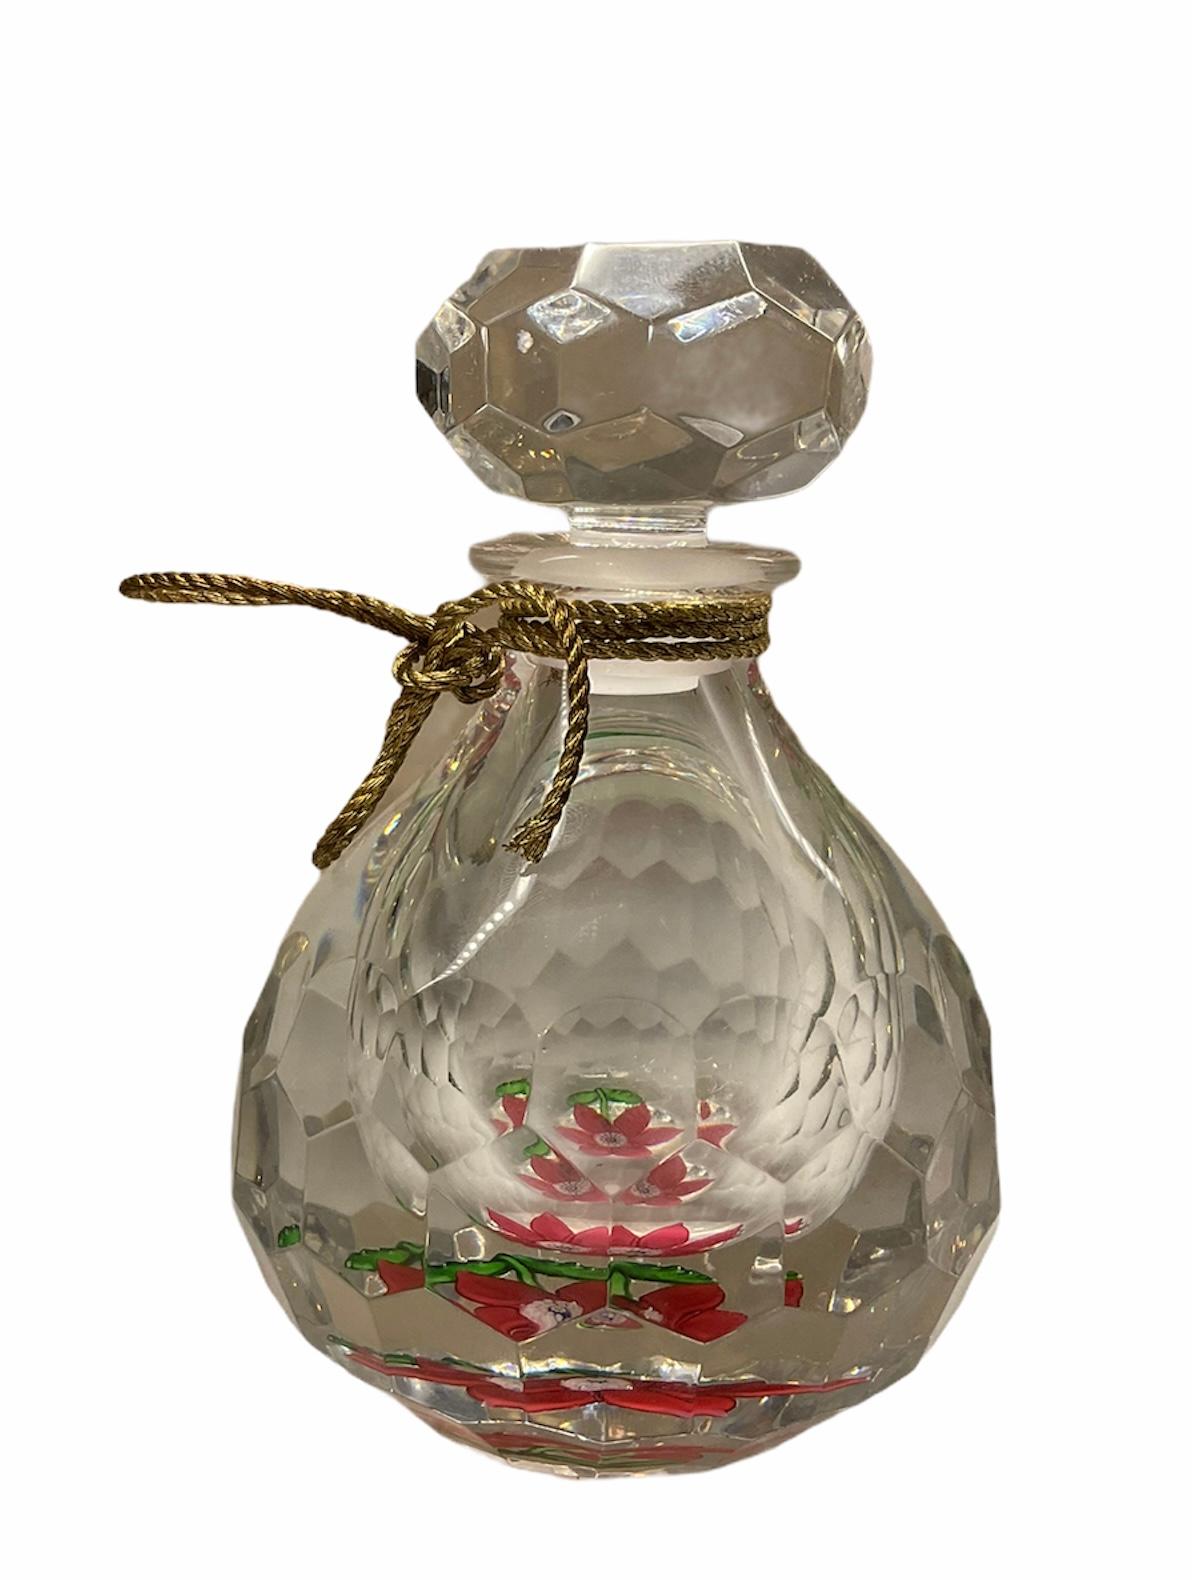 Cristal Saint Louis Ivoire de Balmain Collectible Perfume Decanter/Bottle For Sale 2